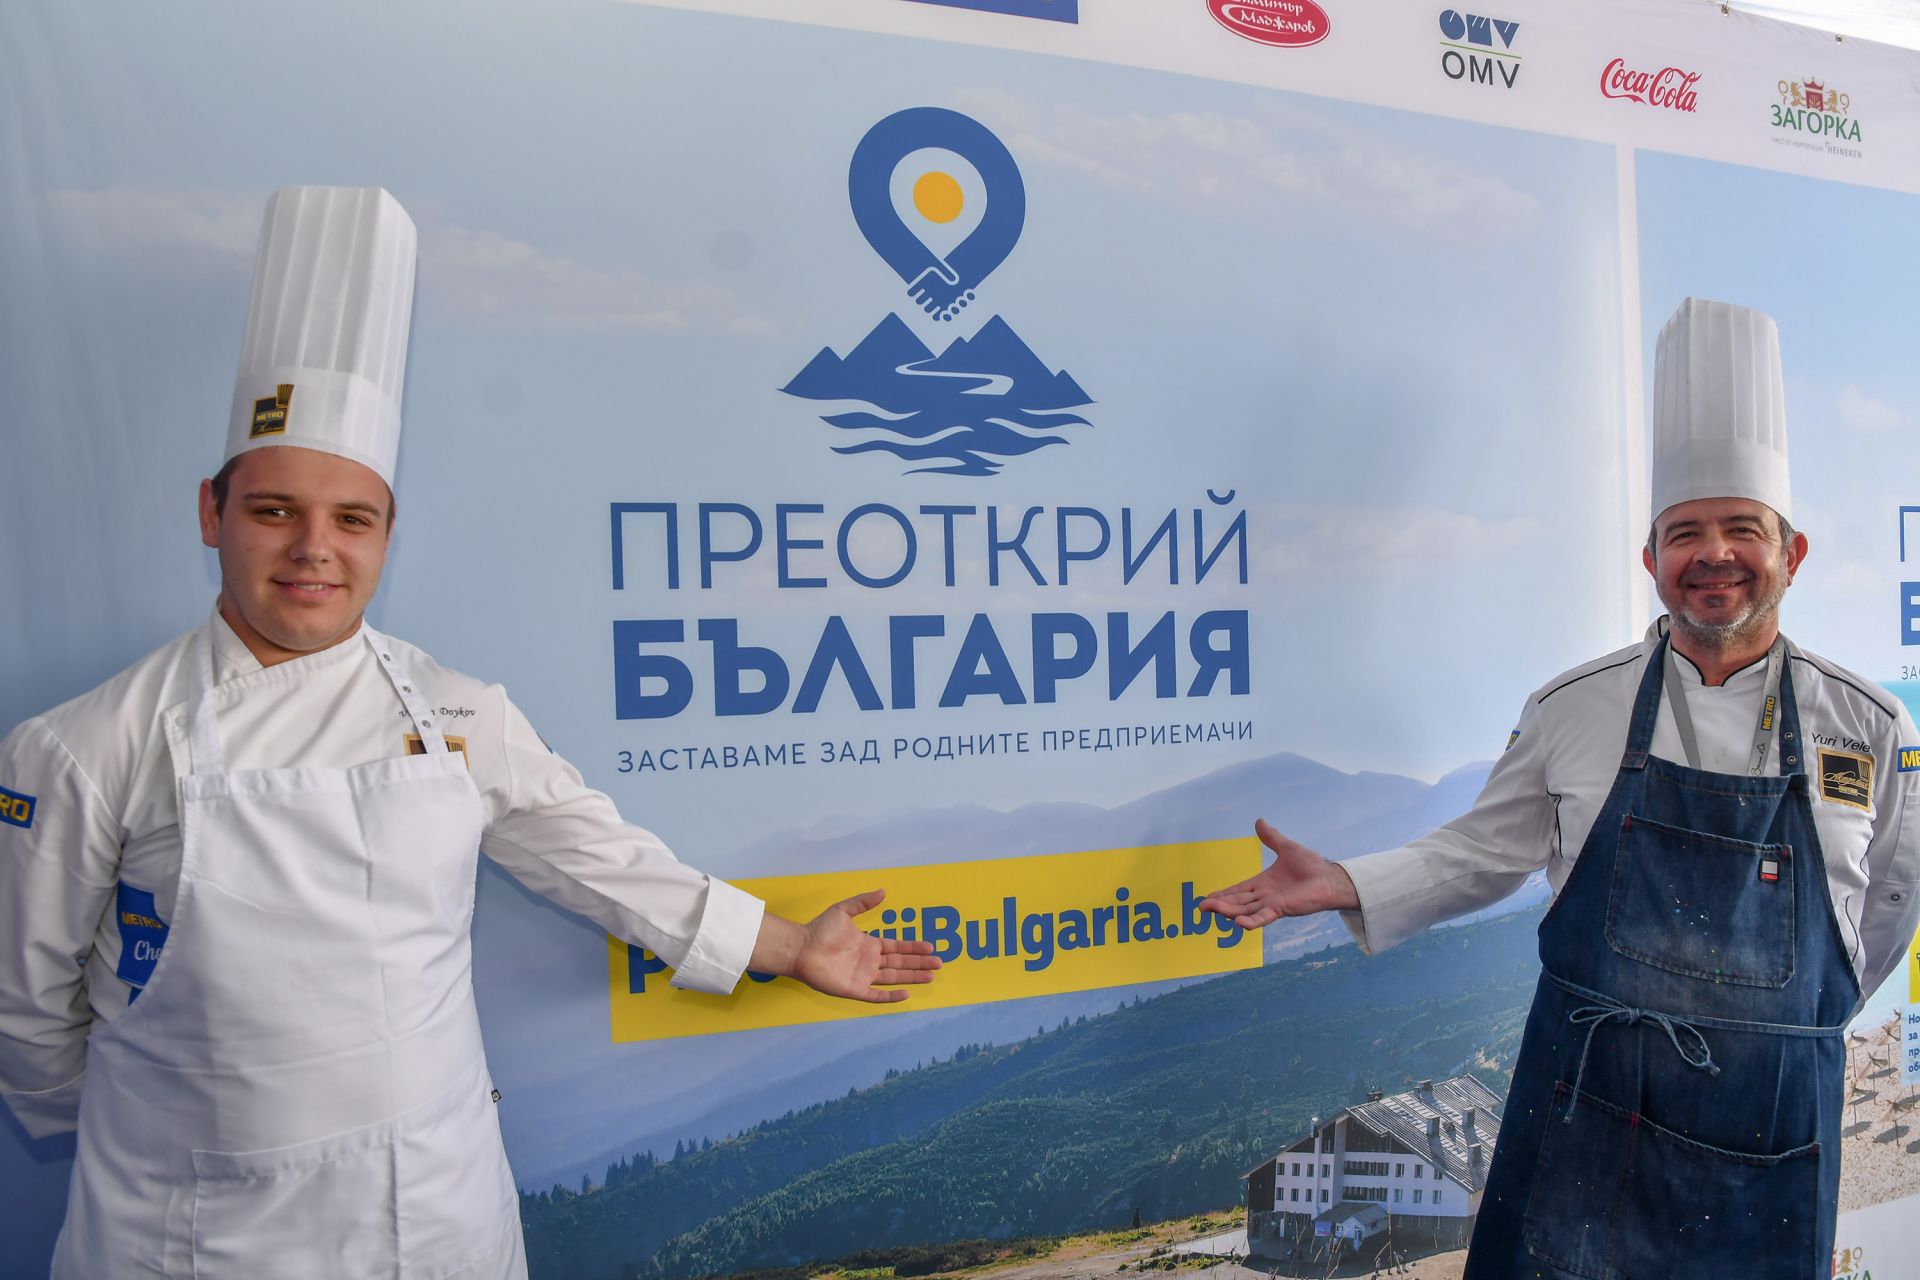 Шеф Юри Велев и Веселин Дойков, кулинарна МЕТРО Академия, презентираха специалното меню от български ястия на „Преоткрий България“, подготвено от автентични български продукти